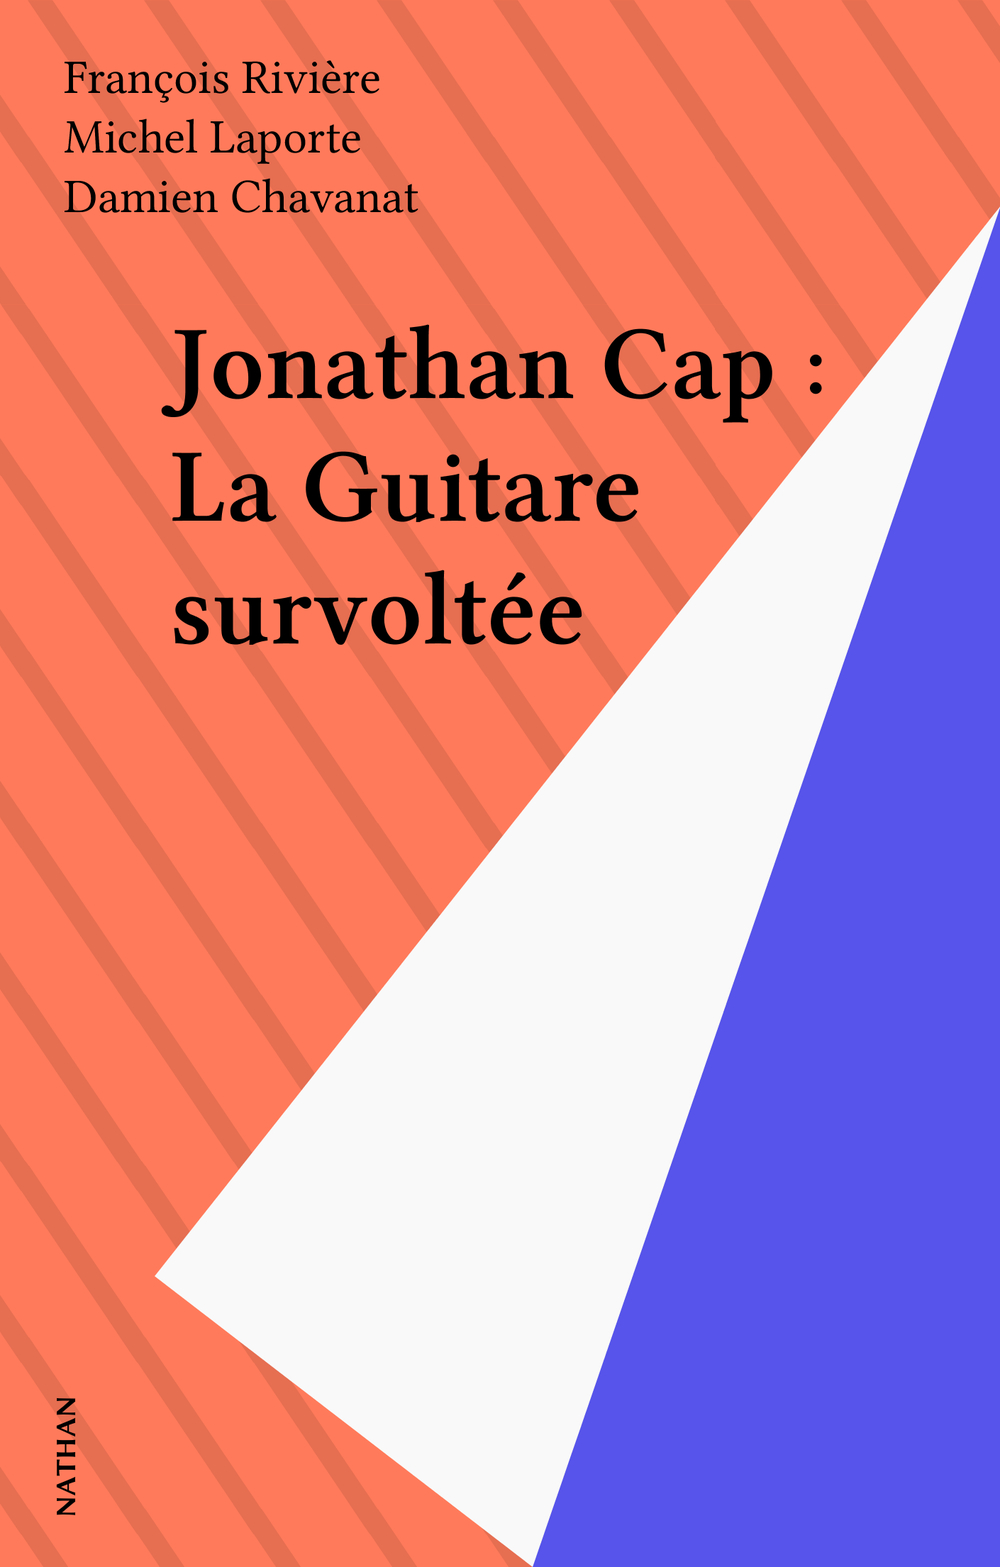 Jonathan Cap : La Guitare survoltée